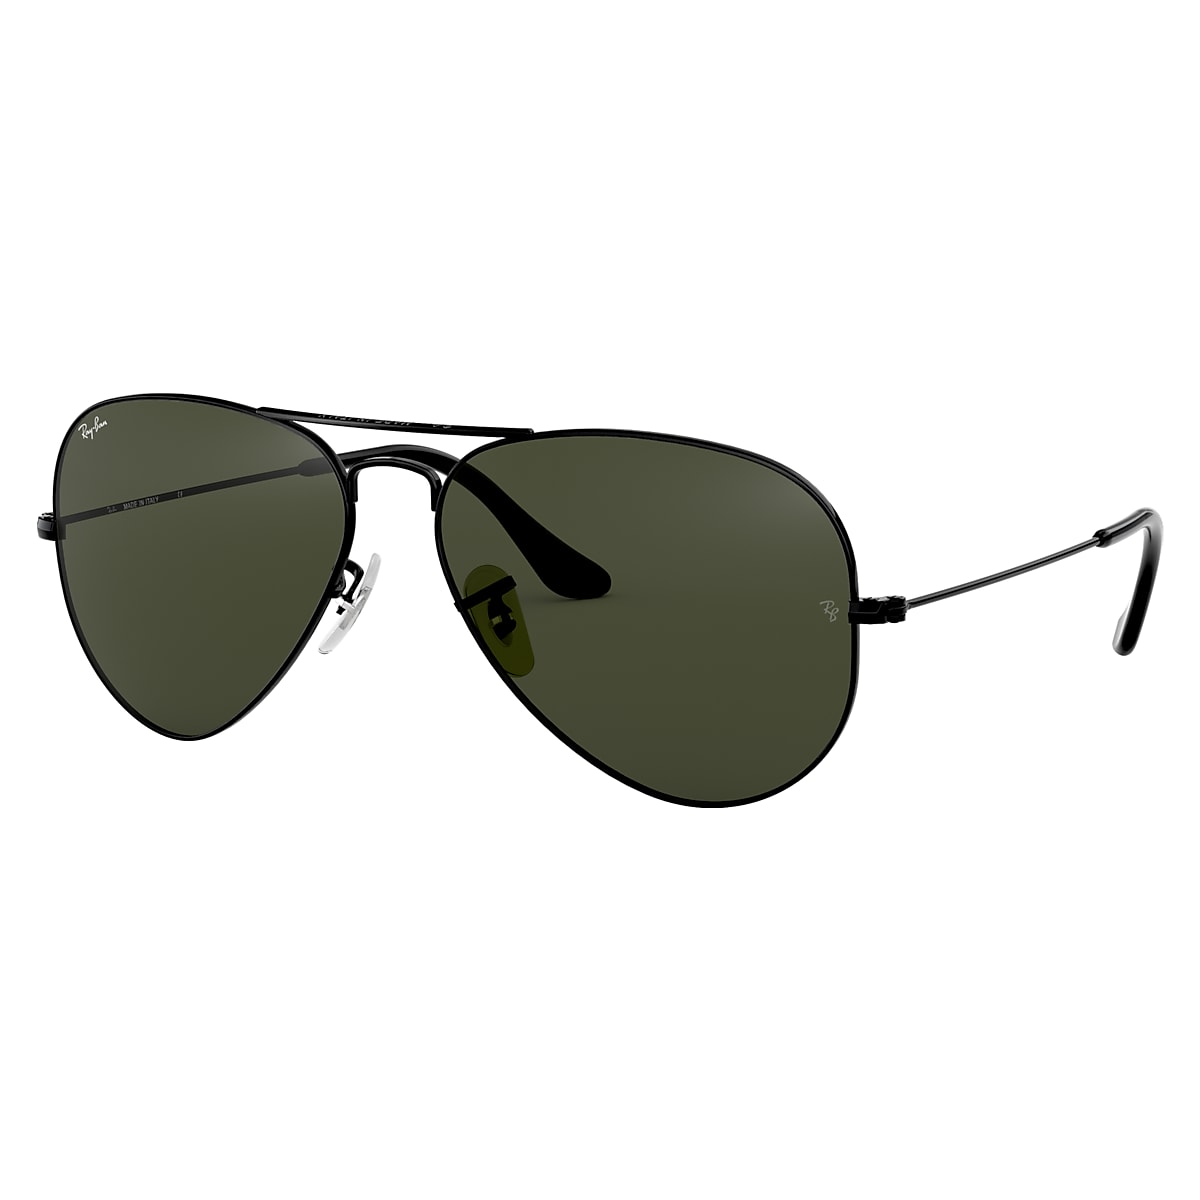 Samengesteld Toeschouwer Geldschieter Ray-Ban Black Sunglasses | Glasses.com® | Free Shipping